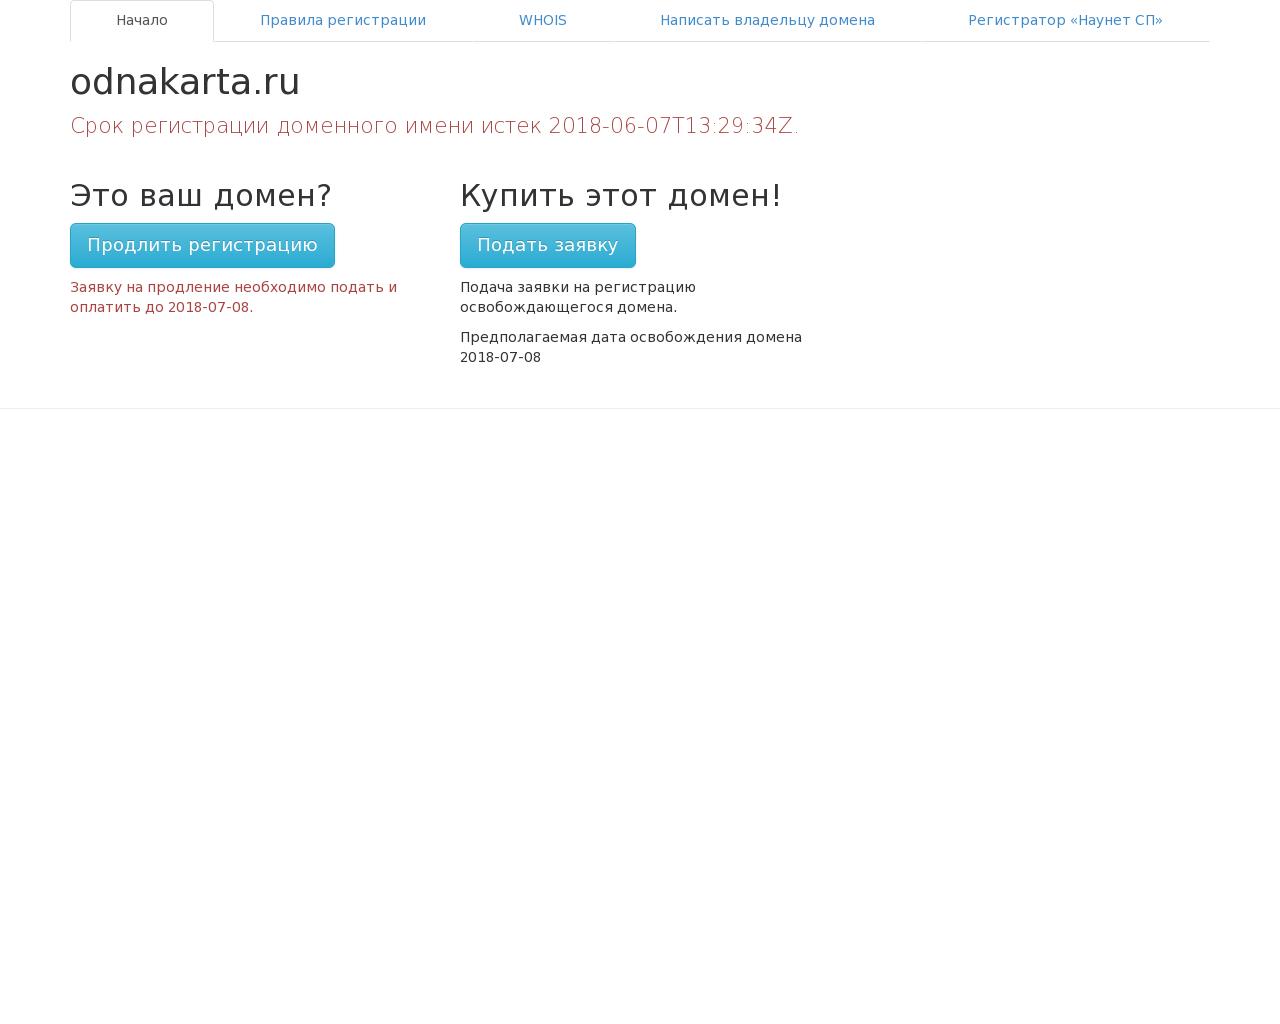 Изображение сайта odnakarta.ru в разрешении 1280x1024